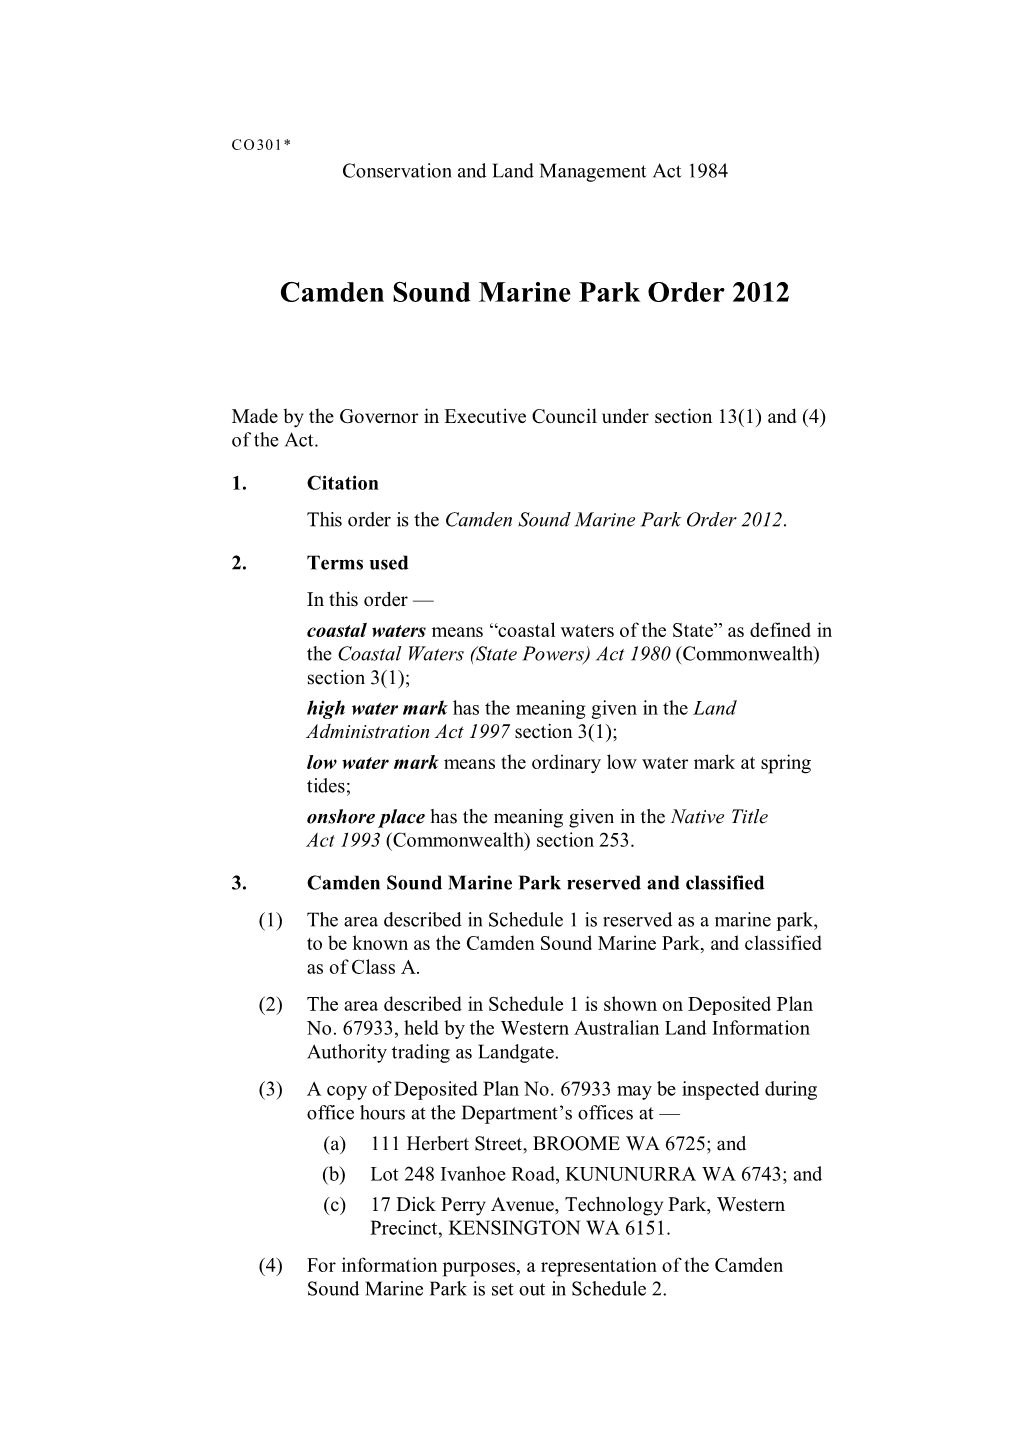 Camden Sound Marine Park Order 2012